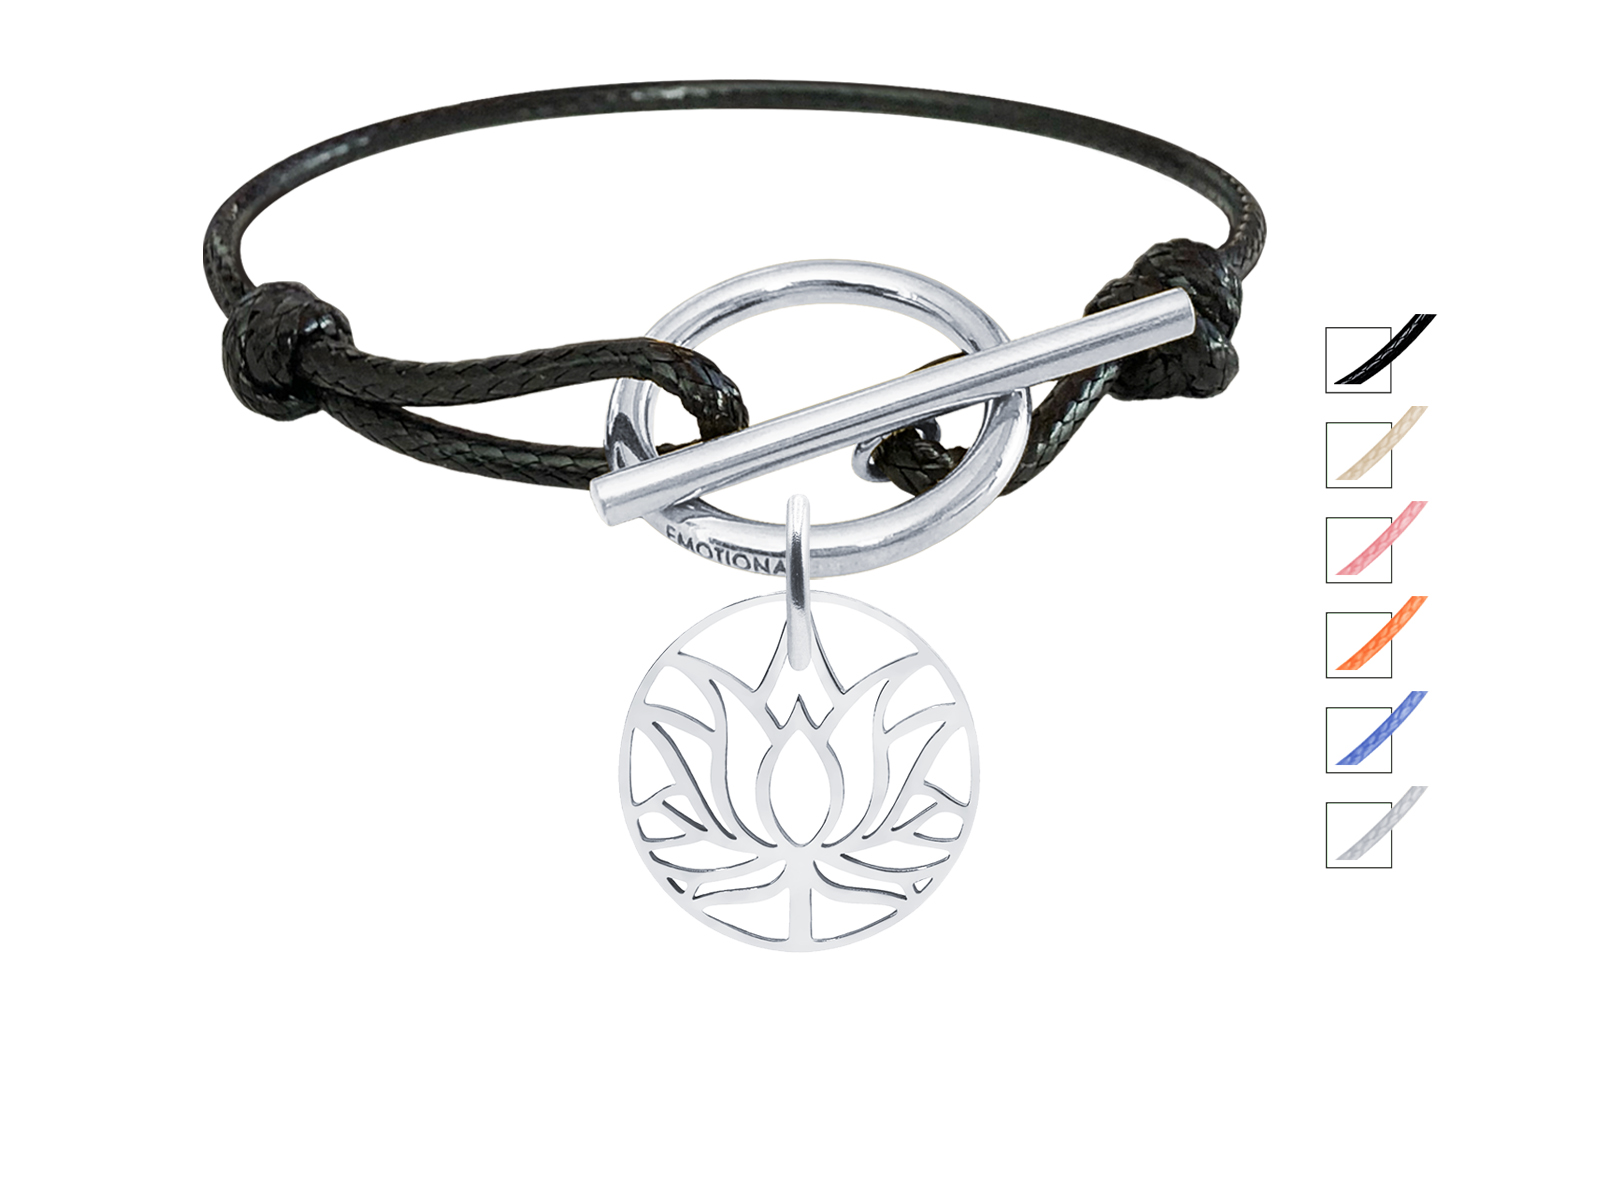 Bracelet cordon ajustable fermoir T avec pampille fleur de lotus en acier inoxydable argenté